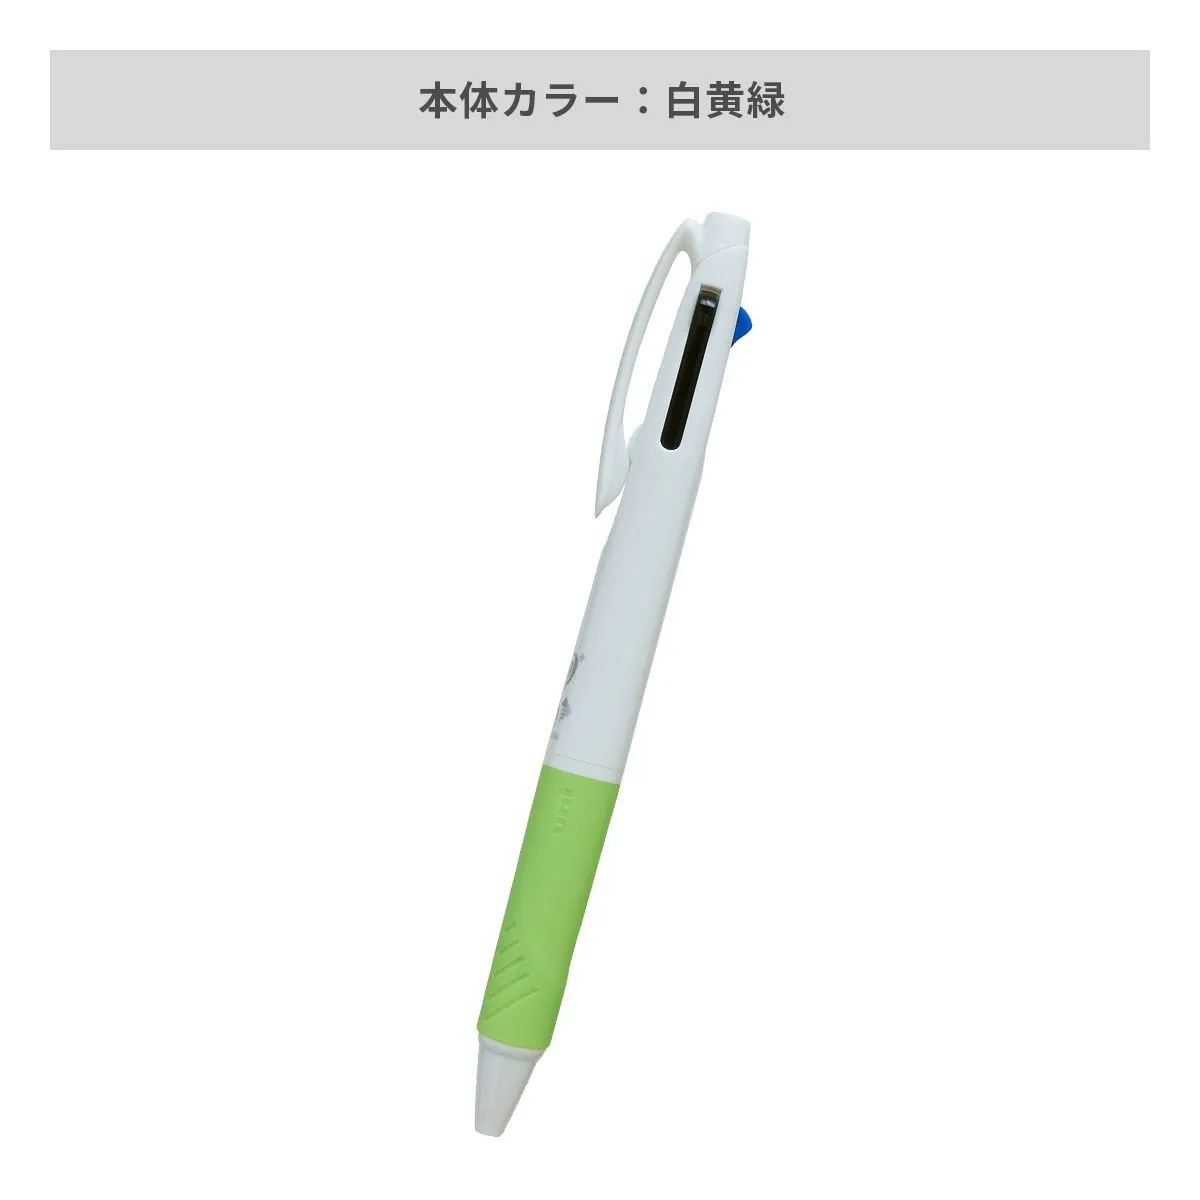 三菱鉛筆 ジェットストリーム 3色ボールペン AGピュア抗菌 白軸 0.7mm【名入れボールペン / パッド印刷】 画像6